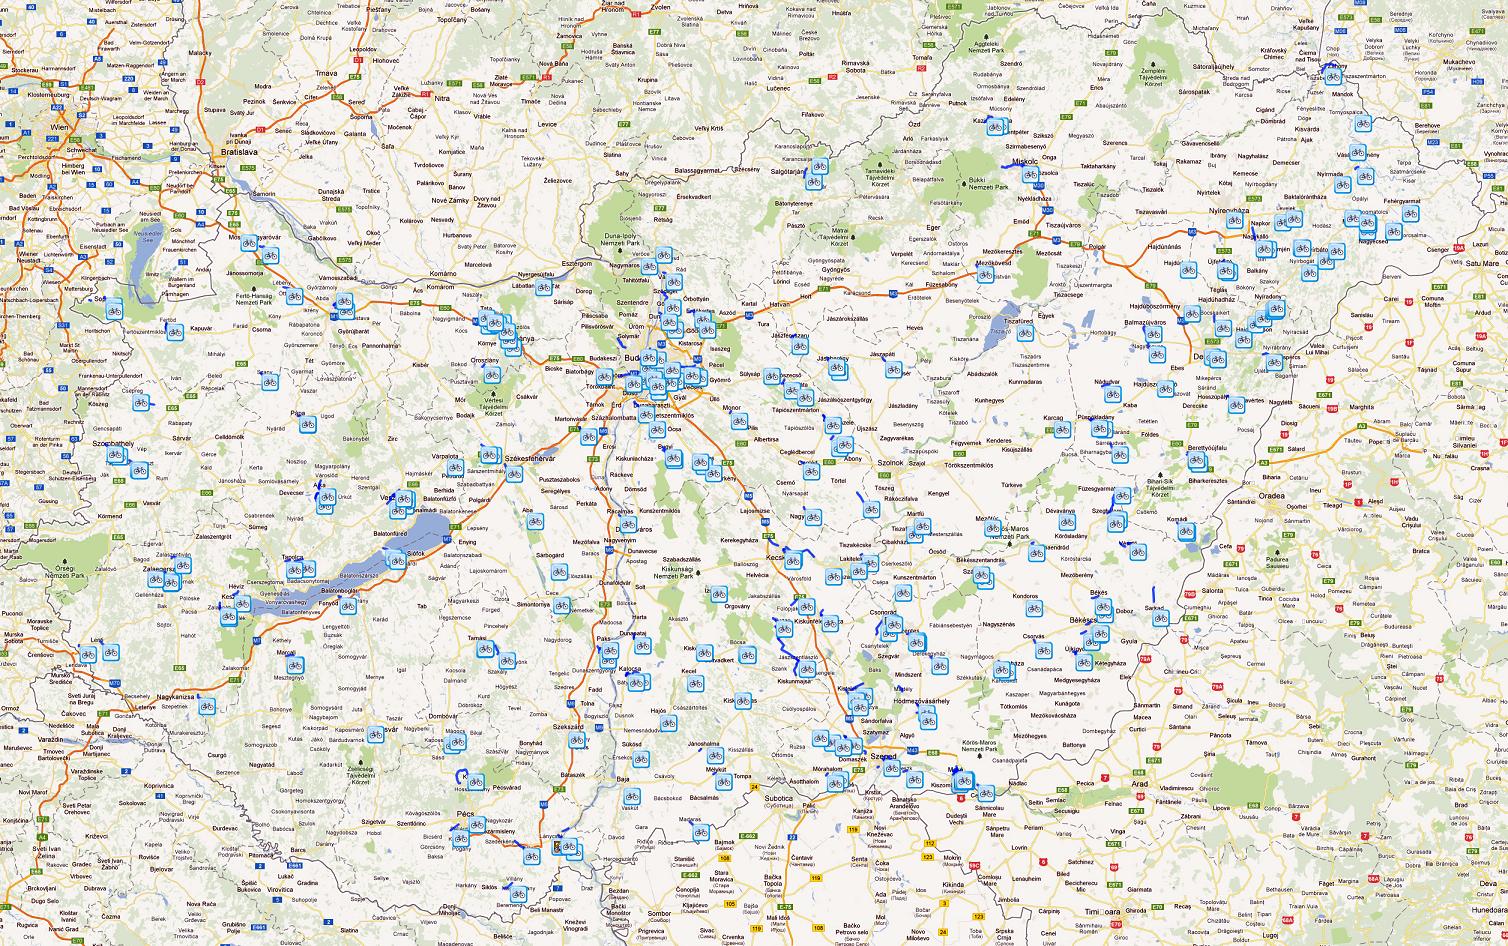 bicikliút térkép magyarország Magyarország kerékpáros térképe   Biciklopédia bicikliút térkép magyarország